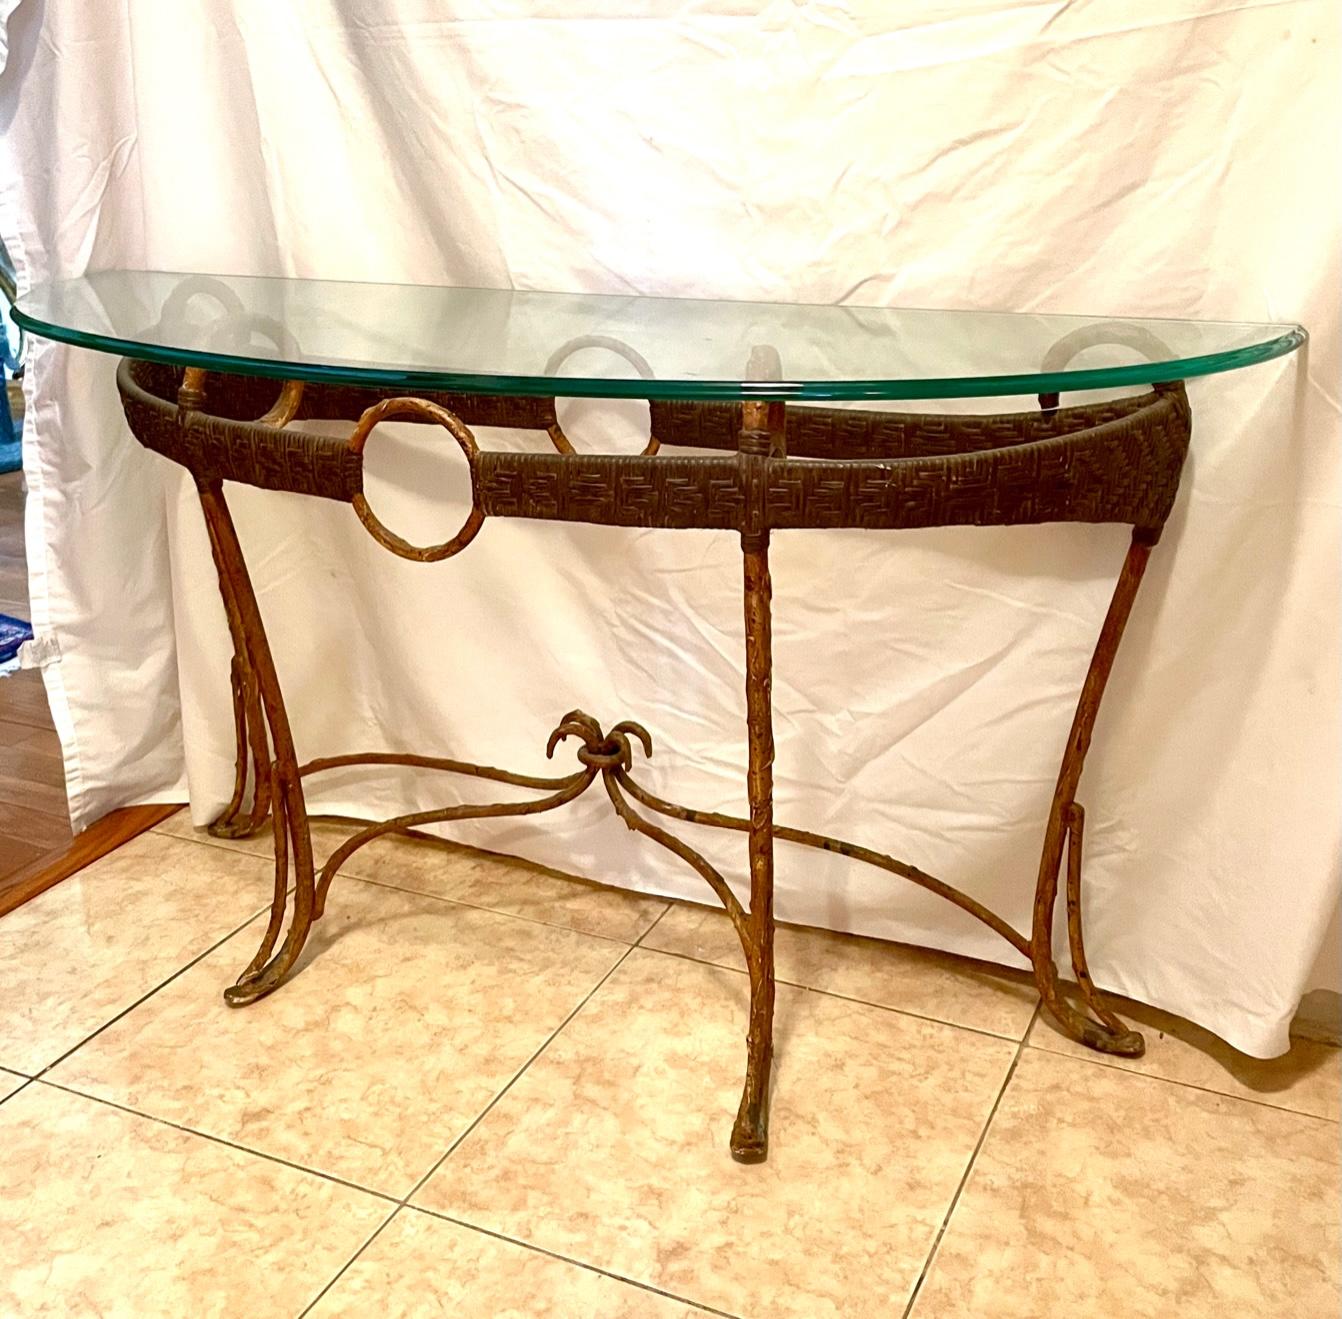 Table console demi lune en rotin, en faux bambou, en fer et en verre, de style Hollywood Regency.

Cette superbe table console Demi-Lune est élégamment créée avec une bande circulaire de rotin en fer avec une finition en faux bambou. Sa forme